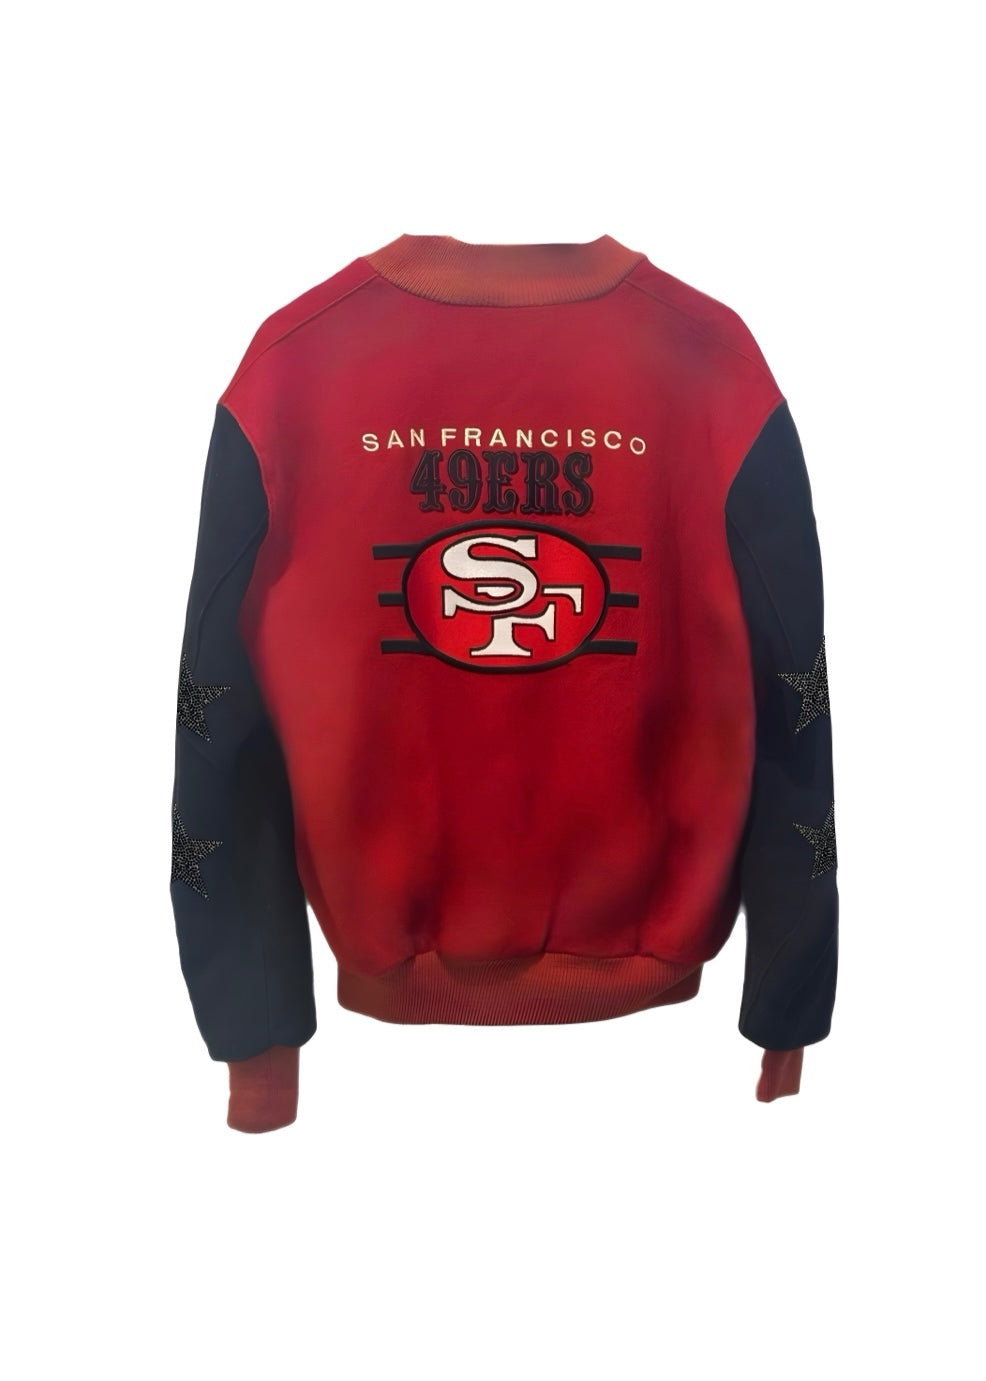 San Francisco 49ers, NFL “Rare Find” One of a KIND Vintage  Bomber Jacket with Black Crystal Star Design